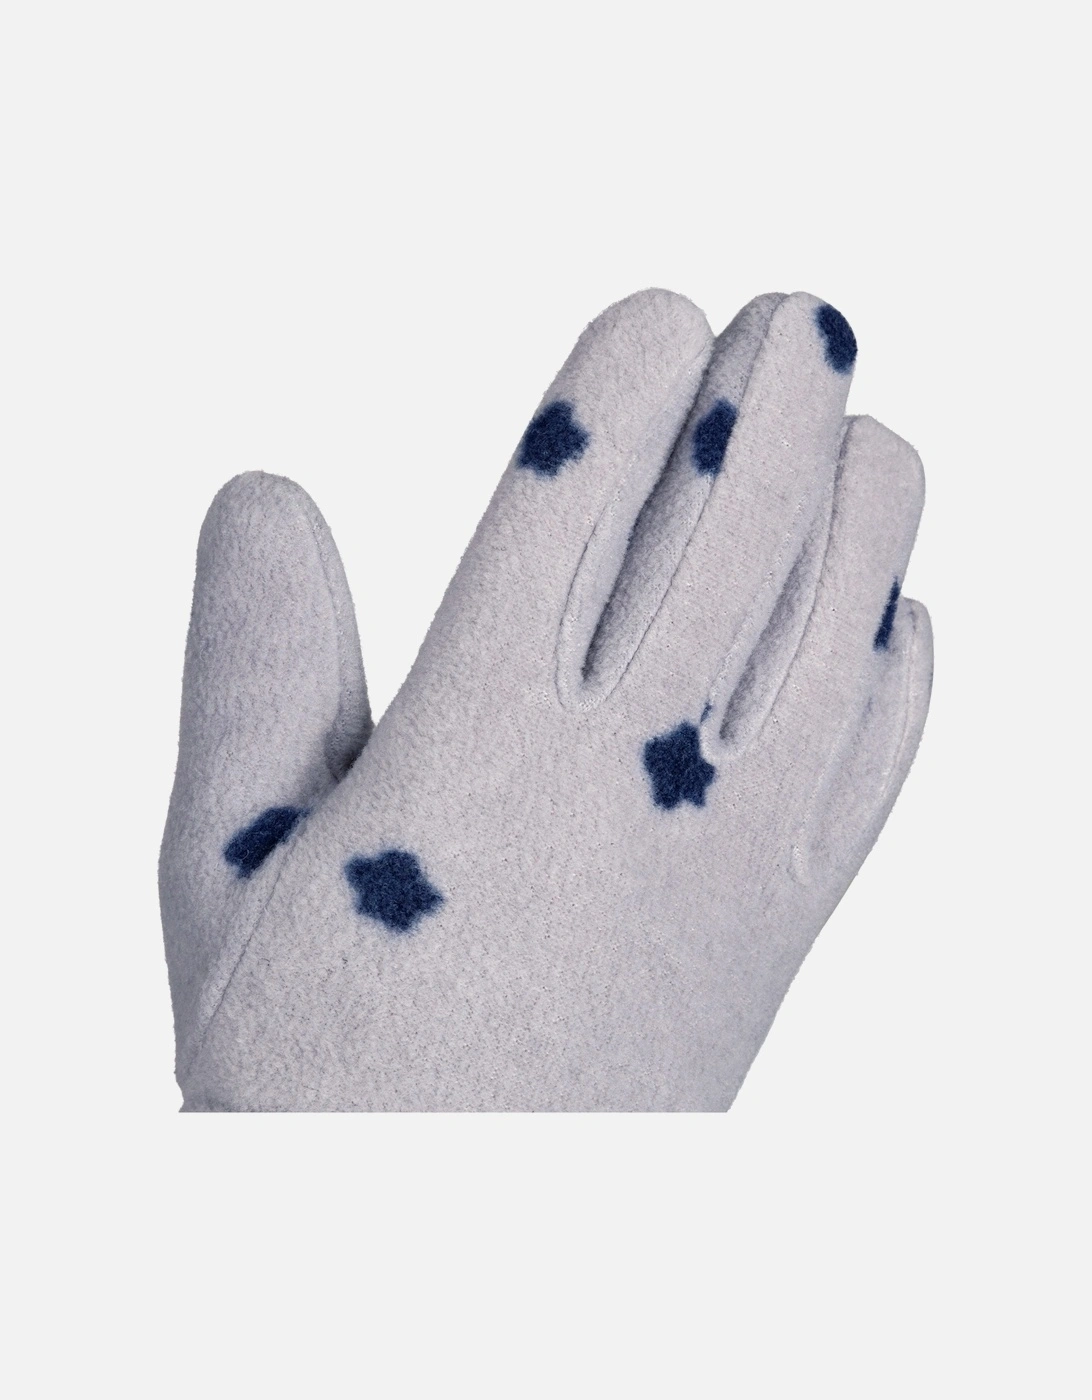 Childrens/Kids Zumee Gloves